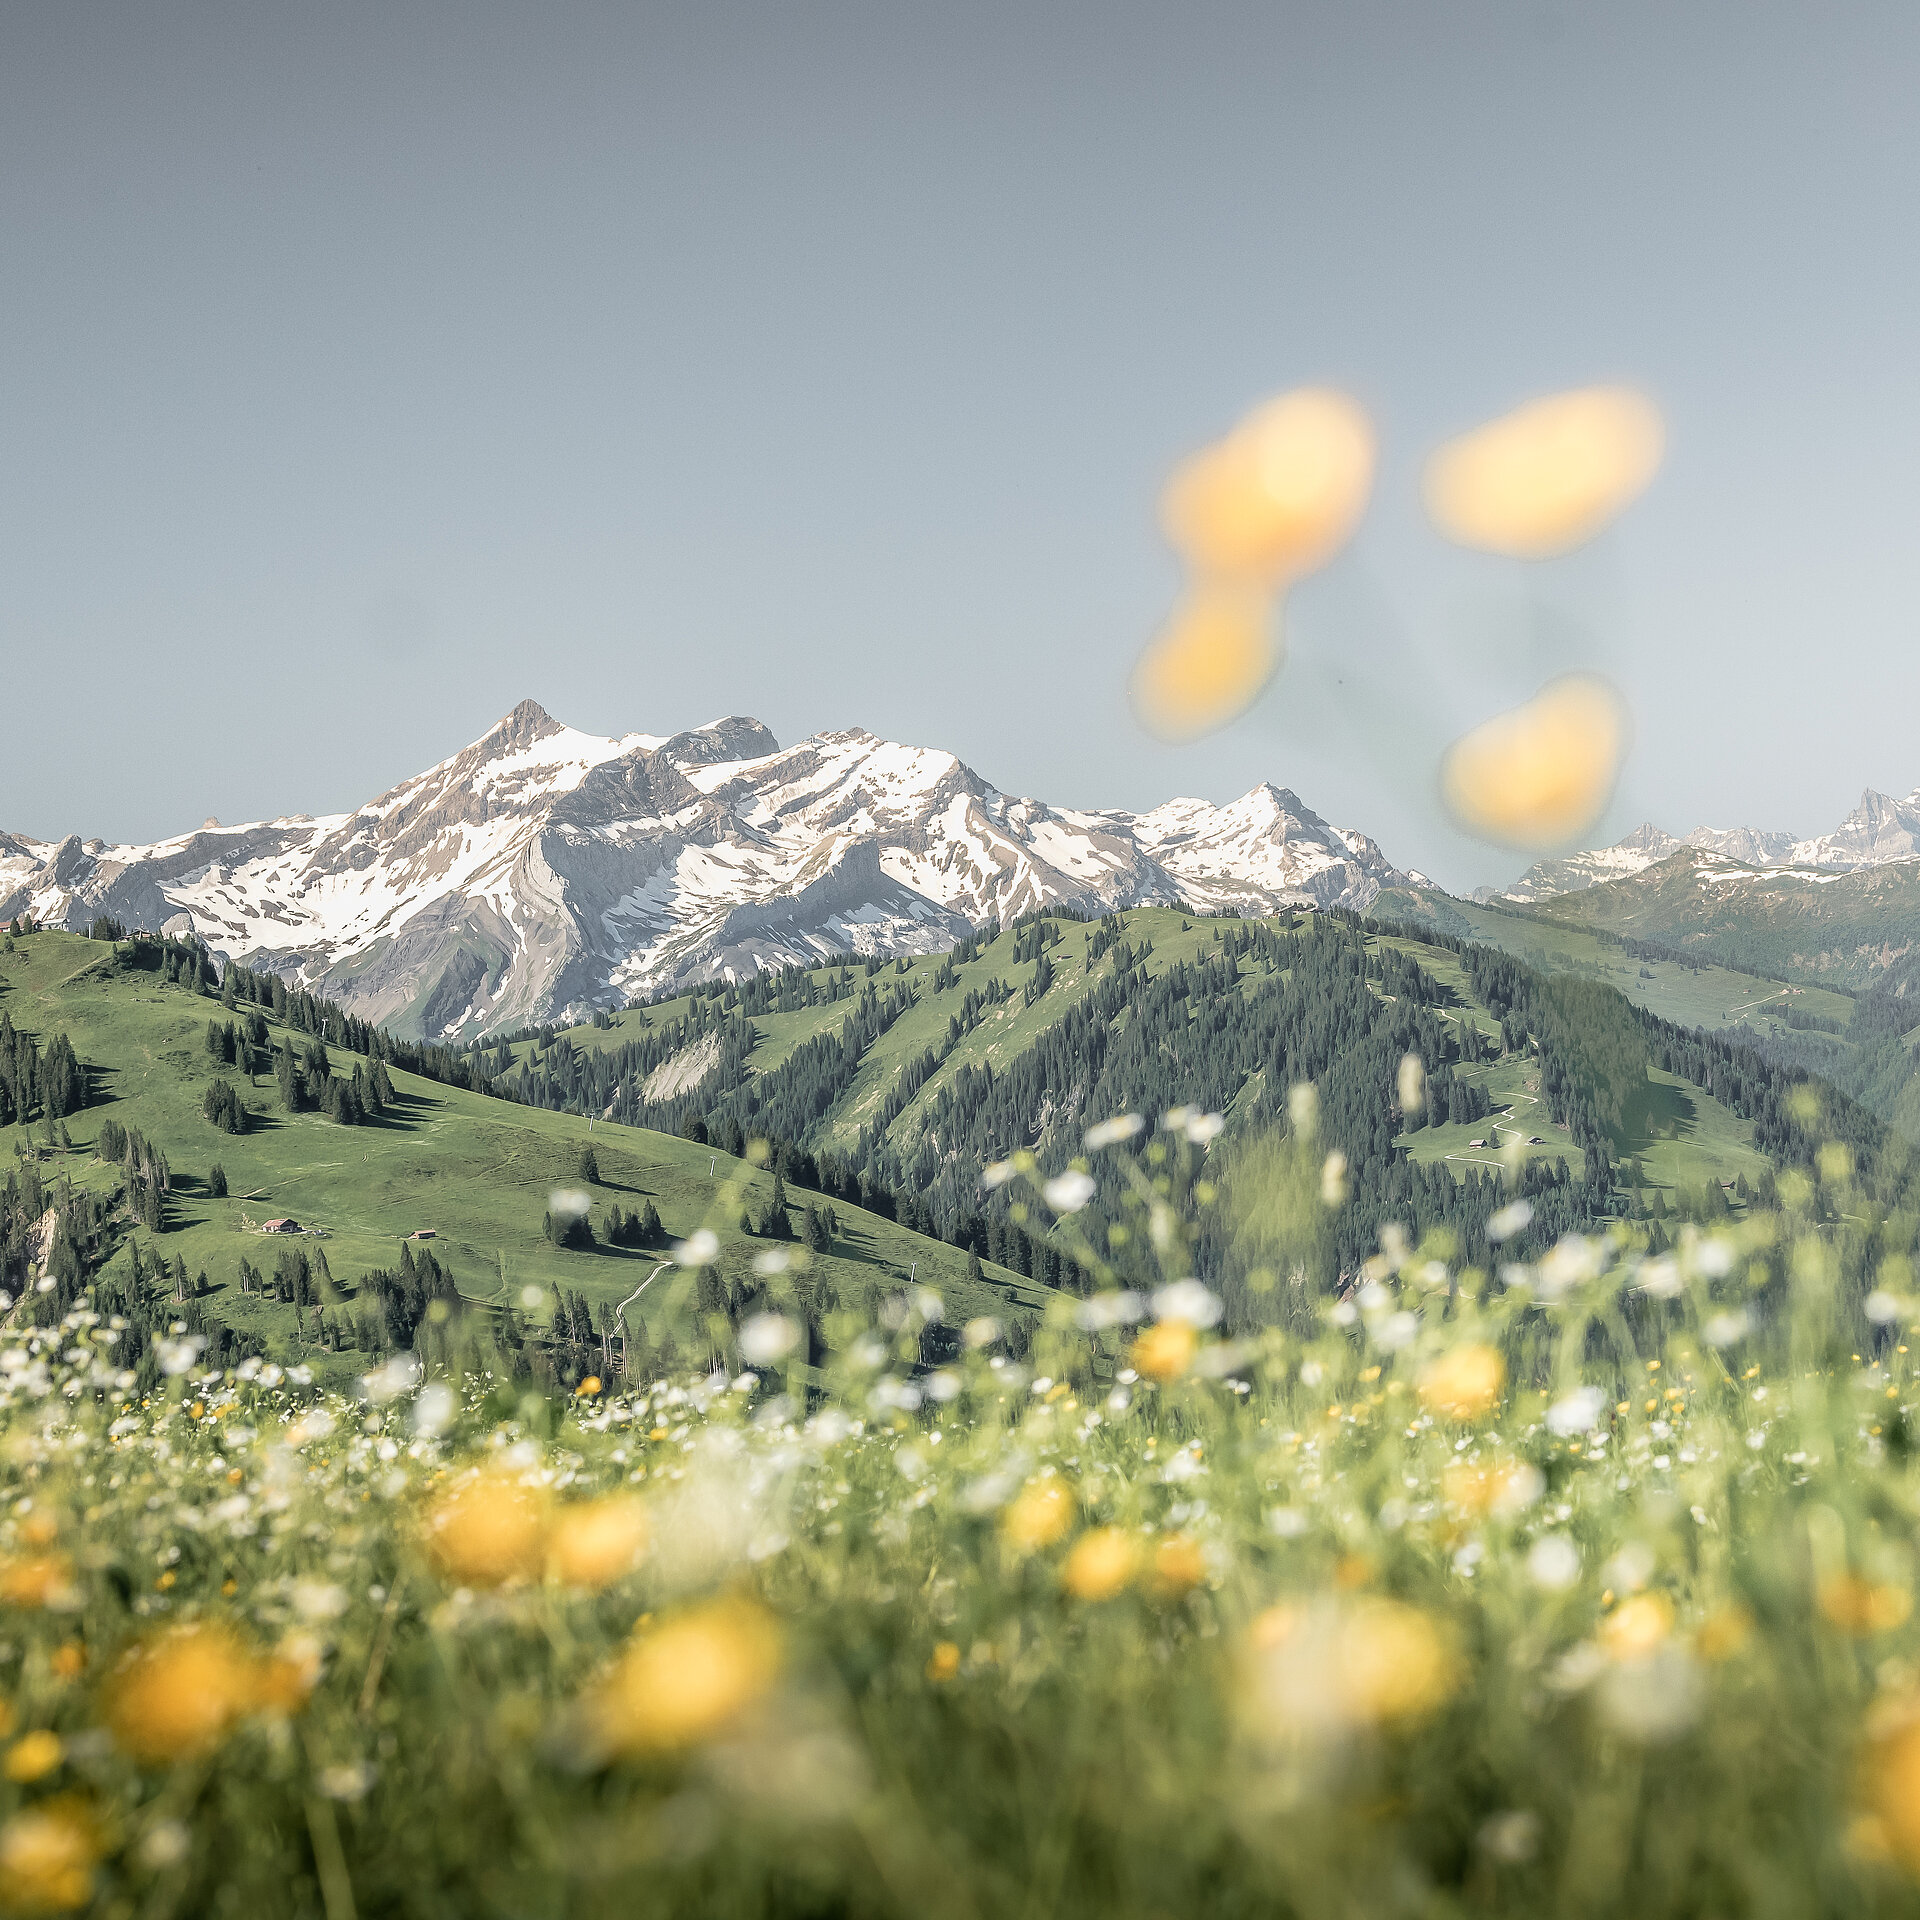 <p>Schönes Bergpanorama in der Skiwelt Gstaad mit einer bunten Blumenwiese im Vordergrund.</p>